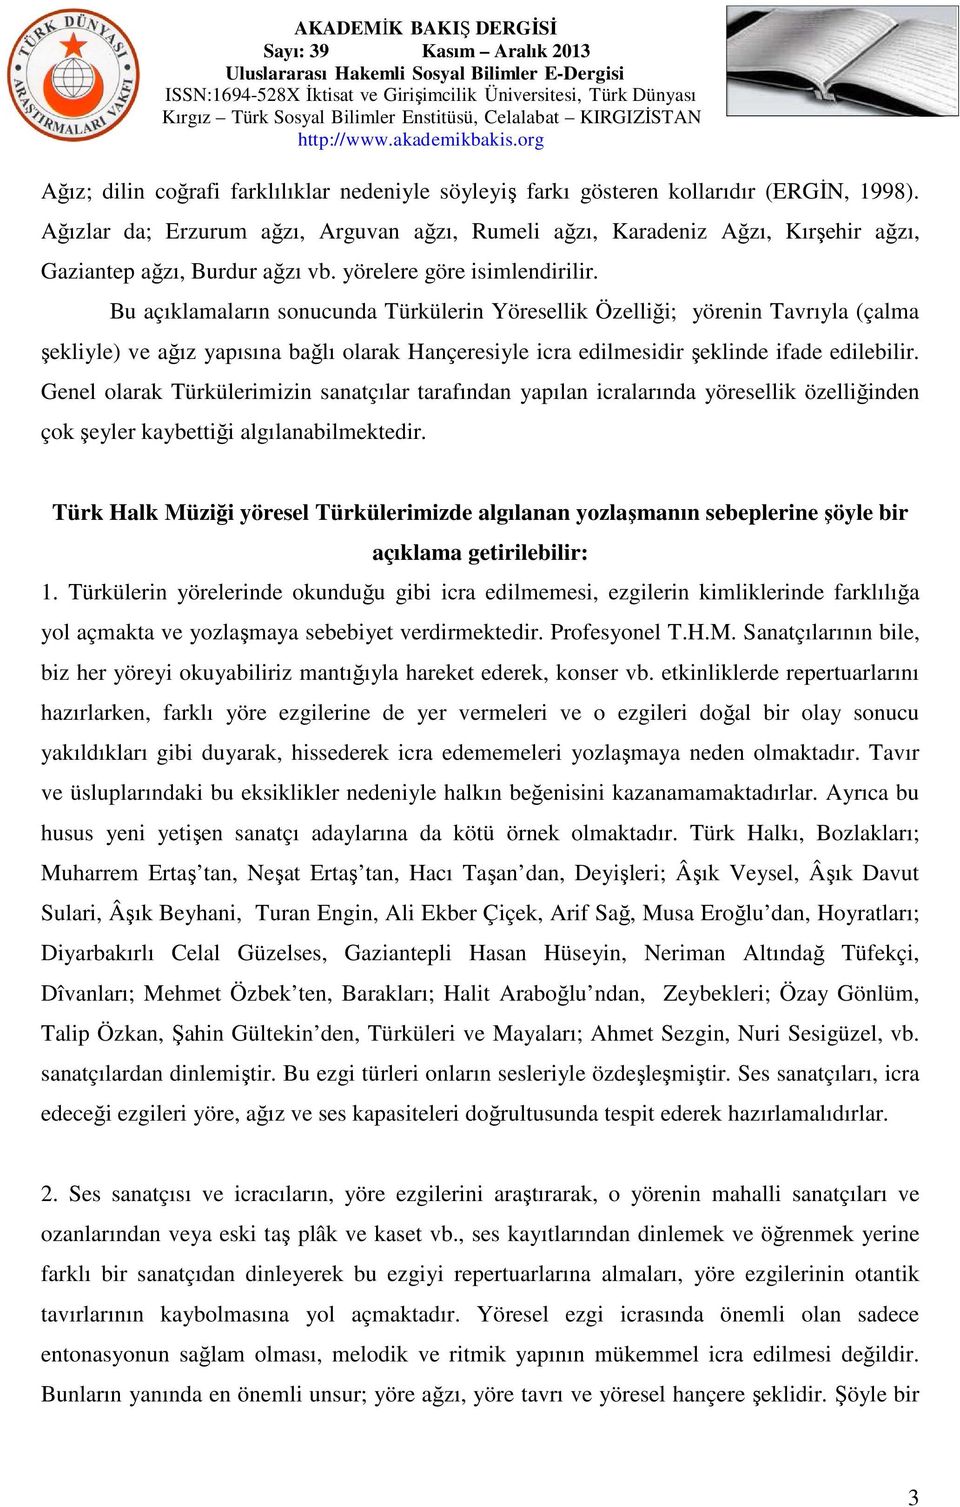 Bu açıklamaların sonucunda Türkülerin Yöresellik Özelliği; yörenin Tavrıyla (çalma şekliyle) ve ağız yapısına bağlı olarak Hançeresiyle icra edilmesidir şeklinde ifade edilebilir.